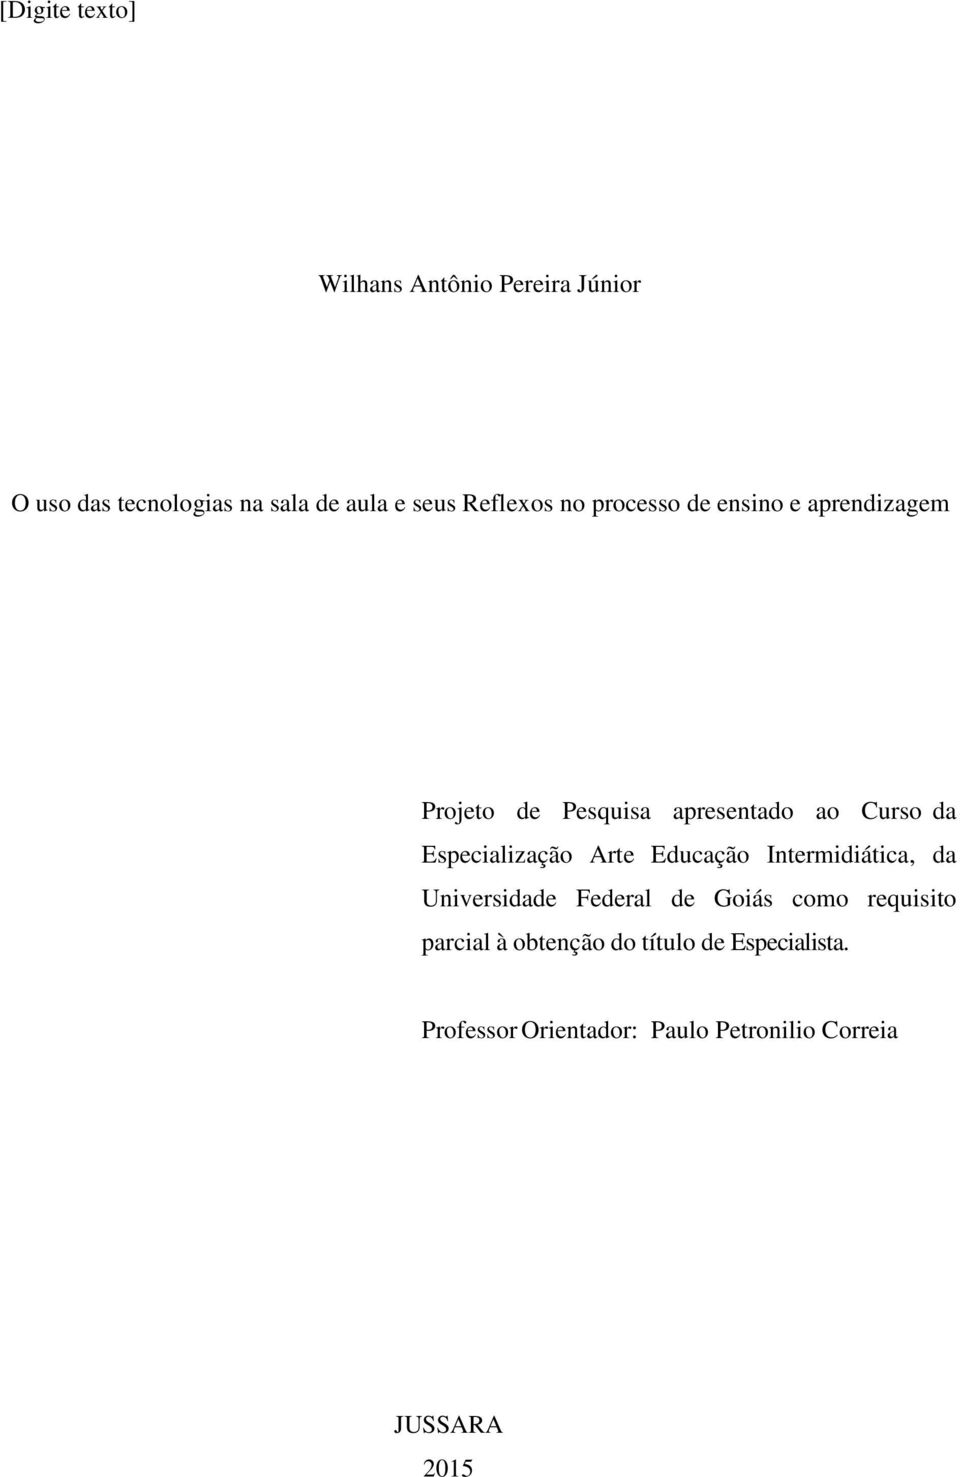 Especialização Arte Educação Intermidiática, da Universidade Federal de Goiás como requisito